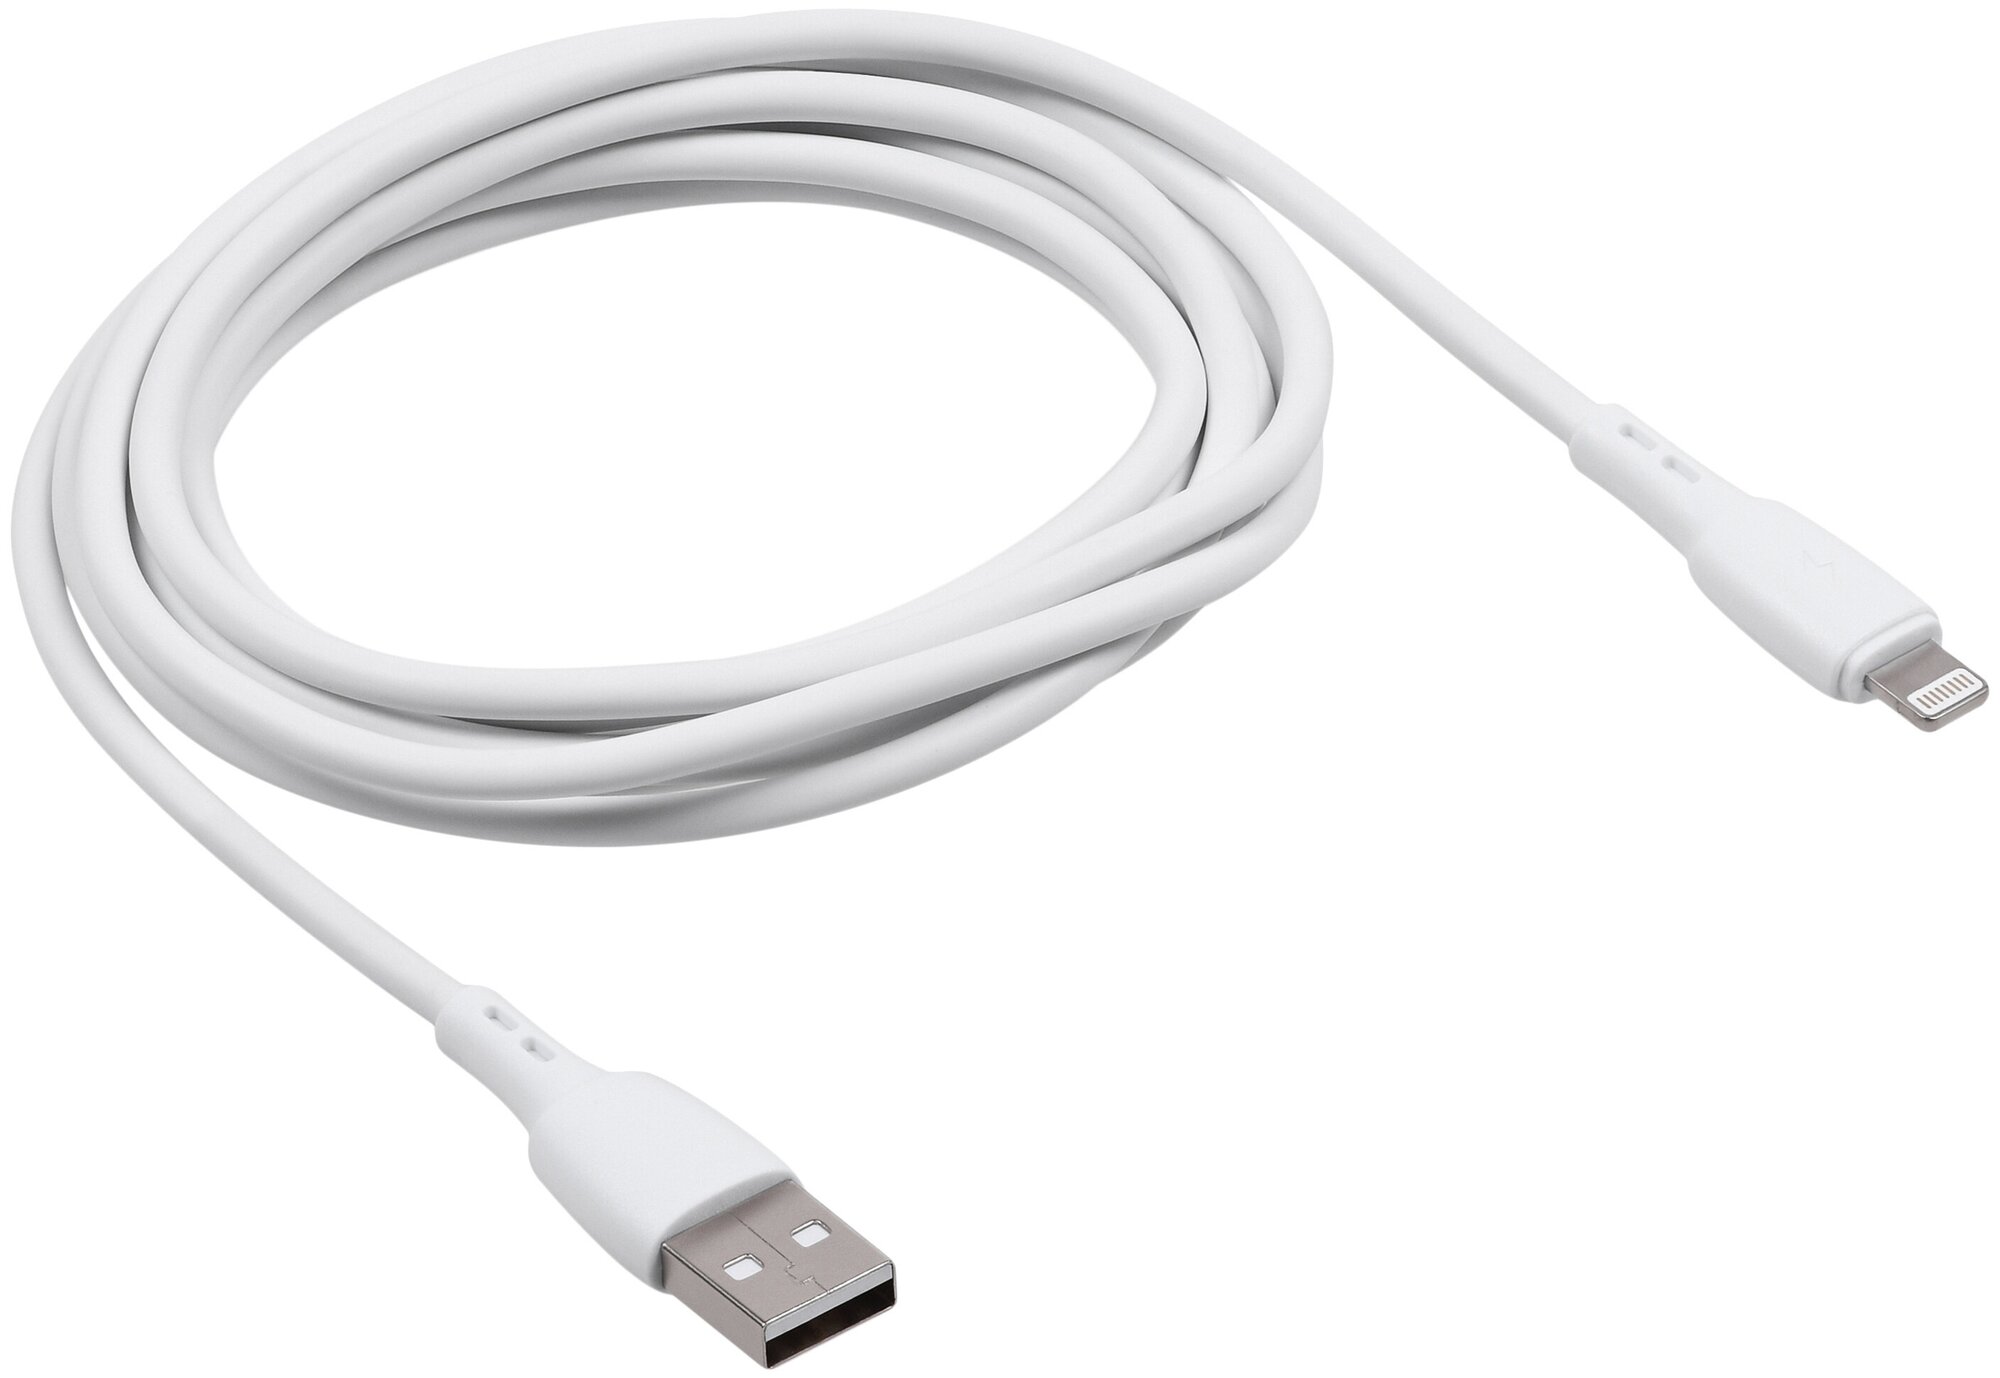 Кабель для зарядки смартфона Carmega 8pin 2.0m white быстрая зарядка для телефона Apple зарядка на айфон